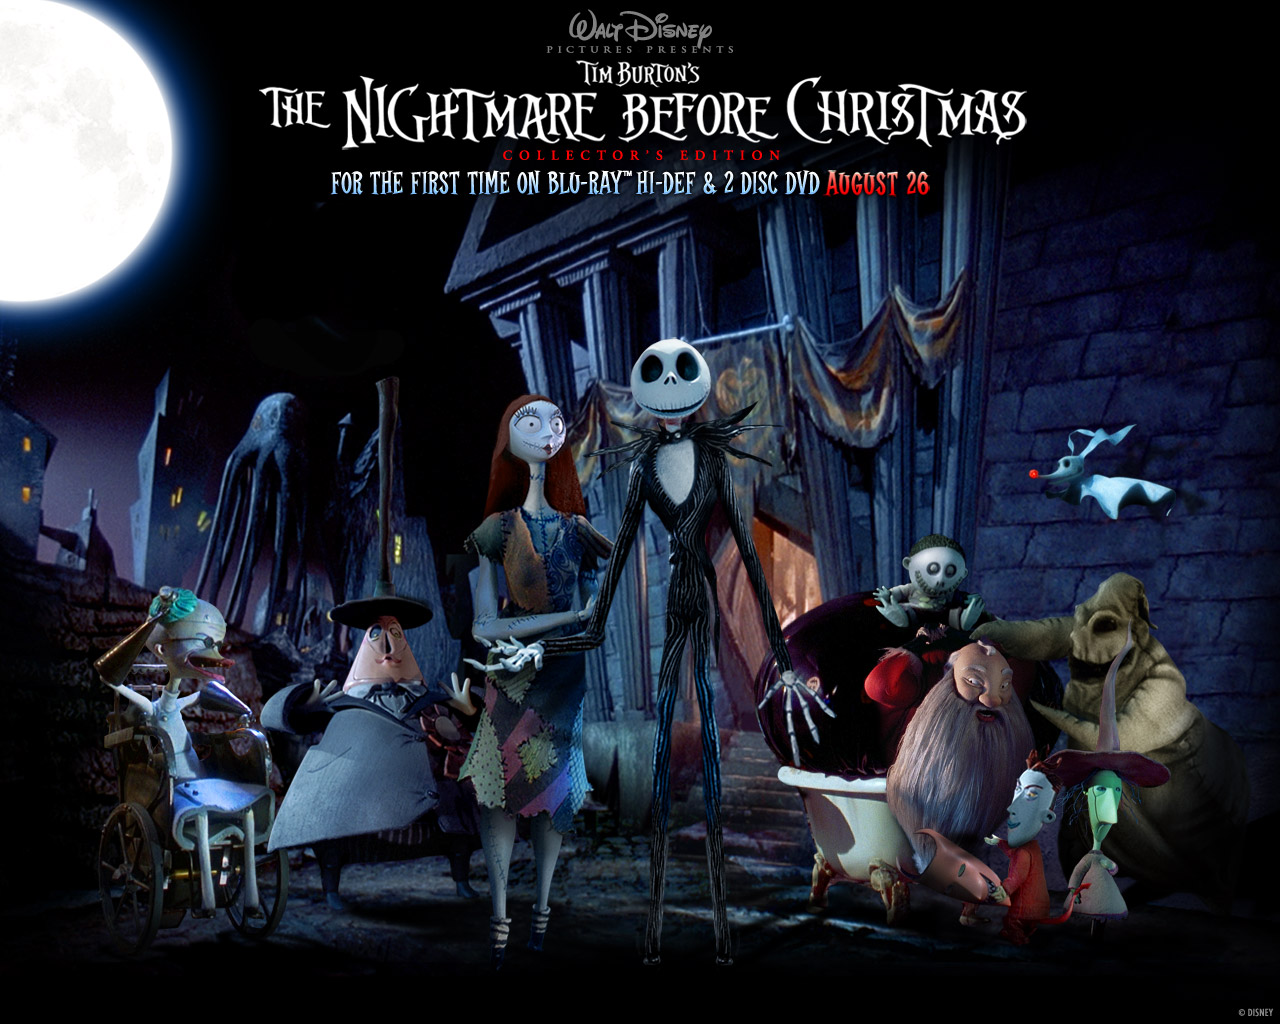 "The Nightmare Before Christmas" desktop wallpaper (1280 x 1024 pixels)